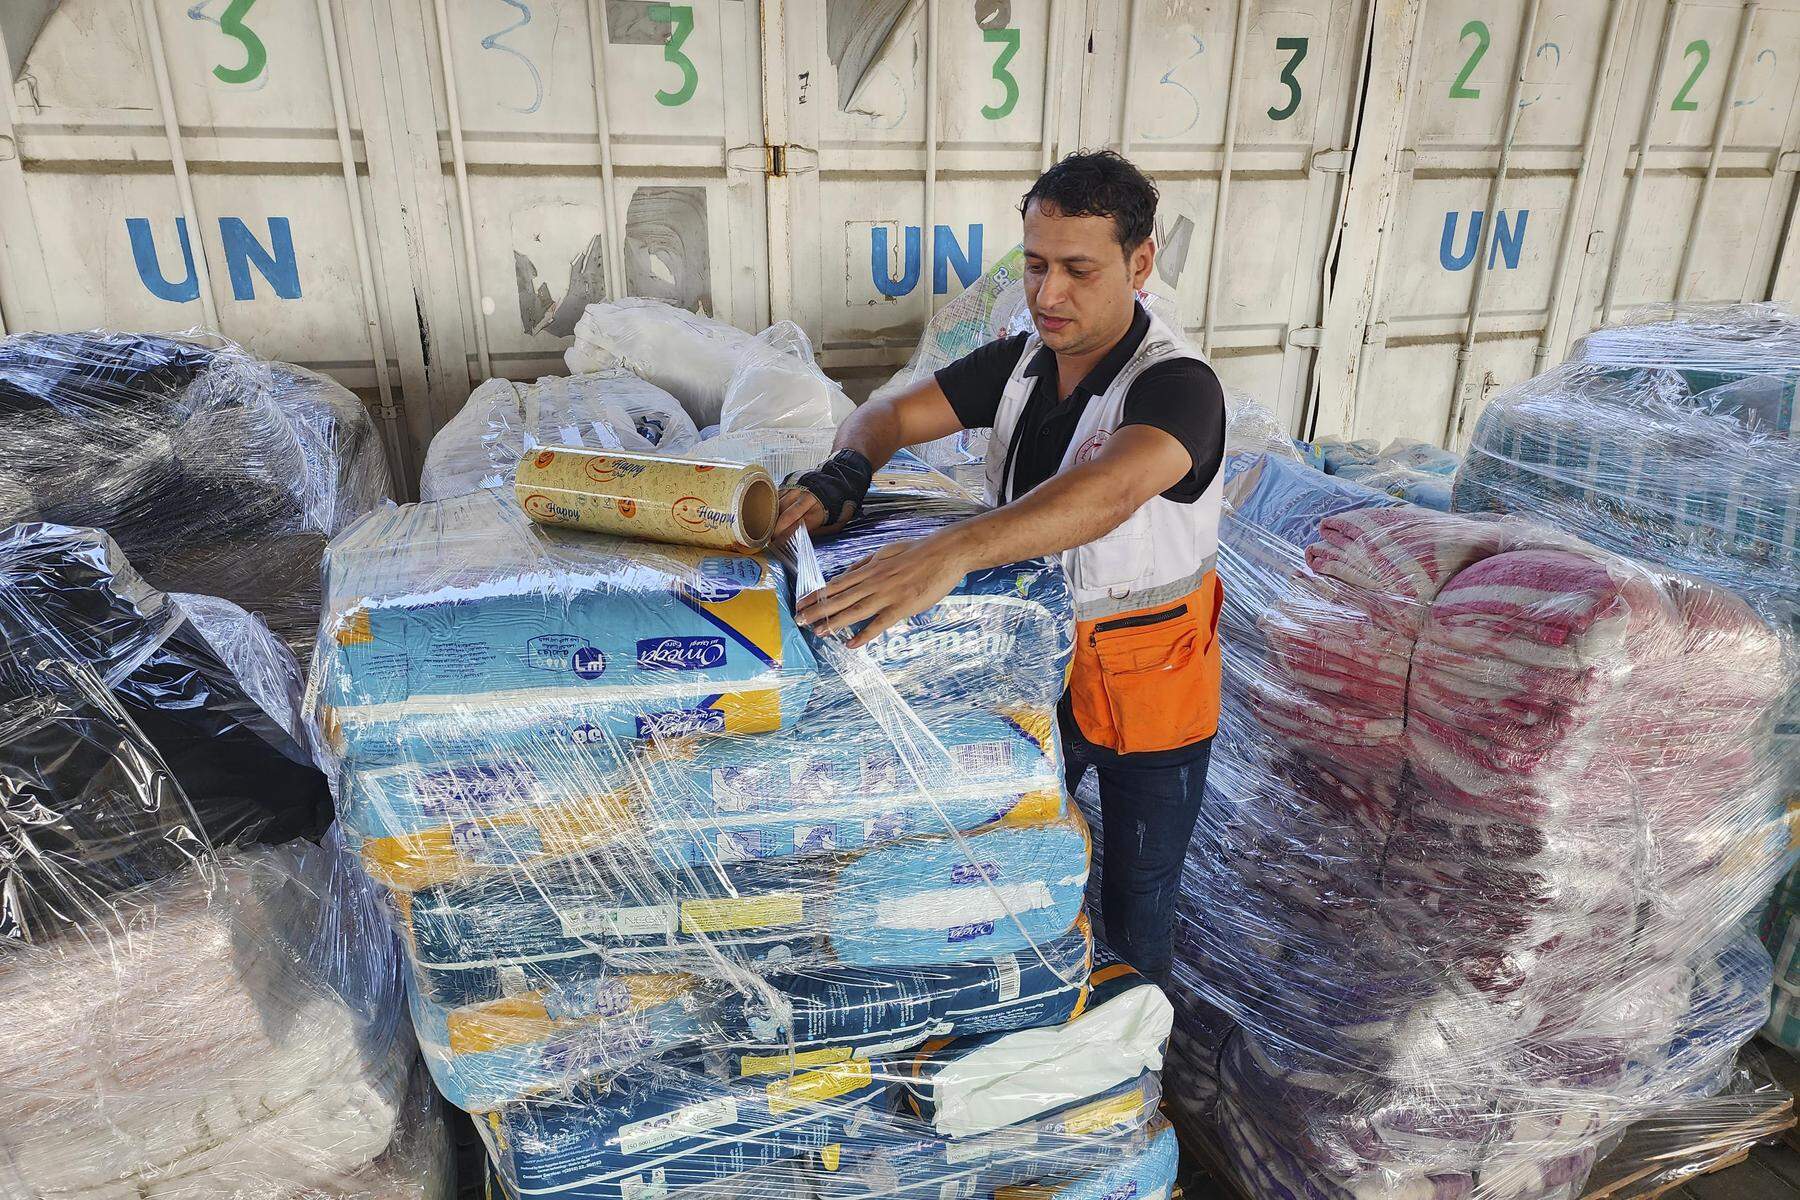 UNRWA droht Auflösung: Palästinenserhilfswerk der UNO geht das Geld aus